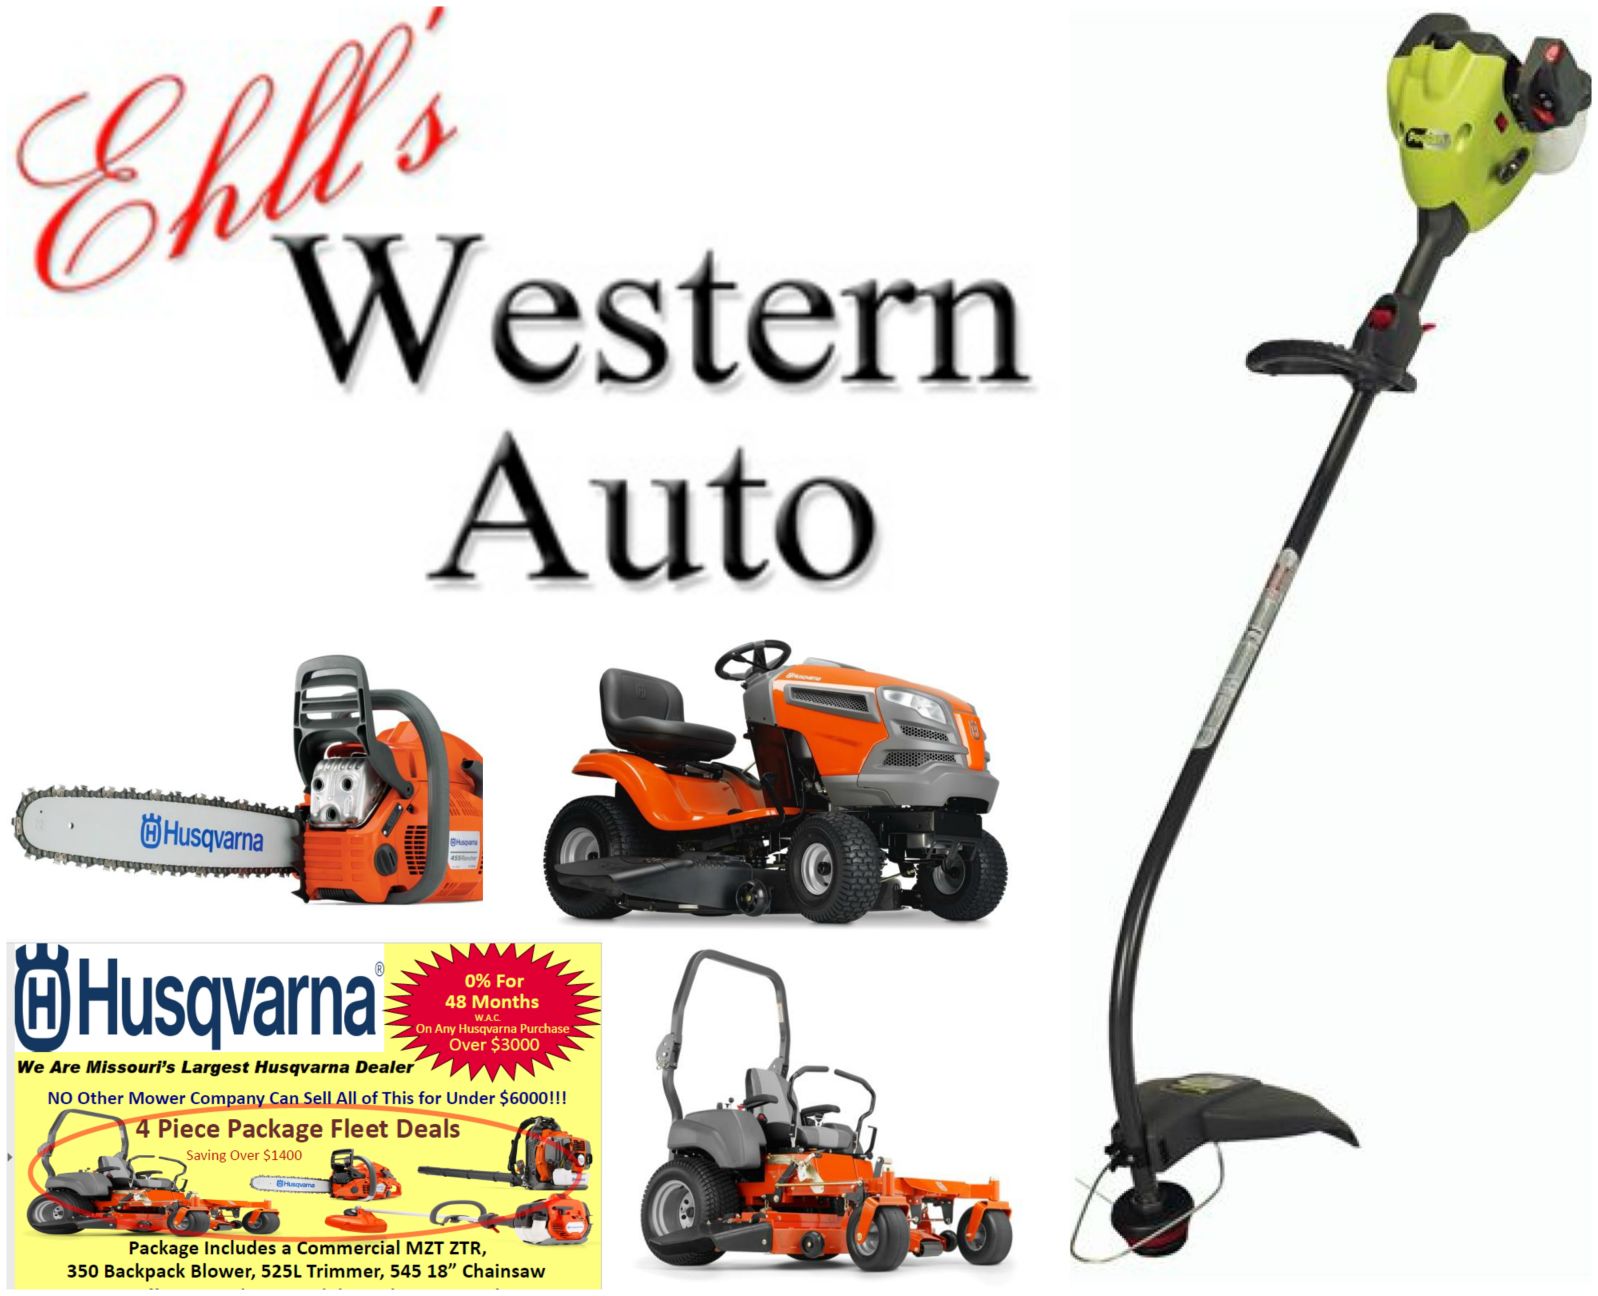 Ehll&#39;s Western Auto | lawn & garden equipment | lawn & garden supplies | Wentzville, MO ...